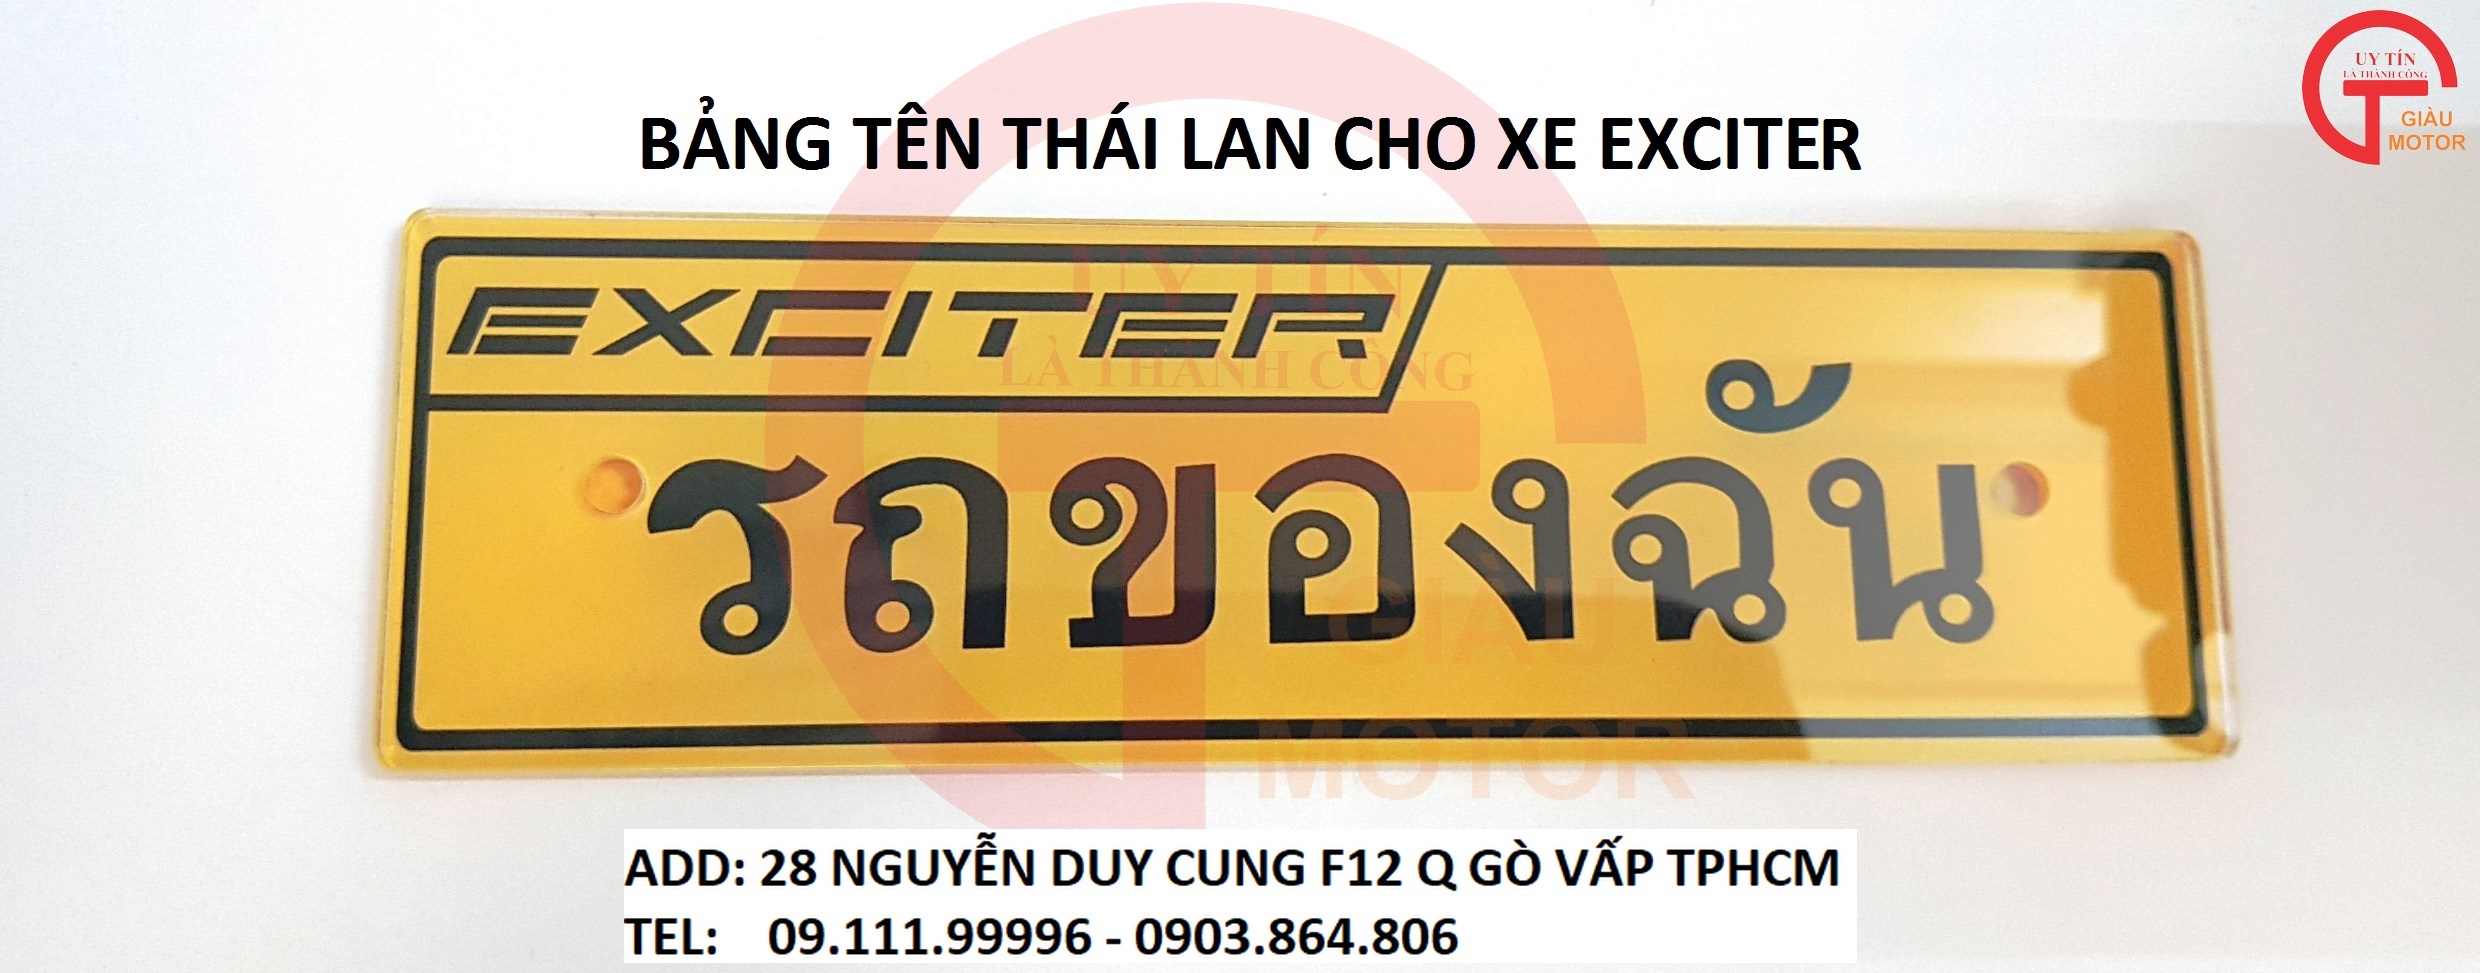 So sánh giá xe Yamaha Exciter 150 Thái Lan và Việt Nam  Danhgiaxe